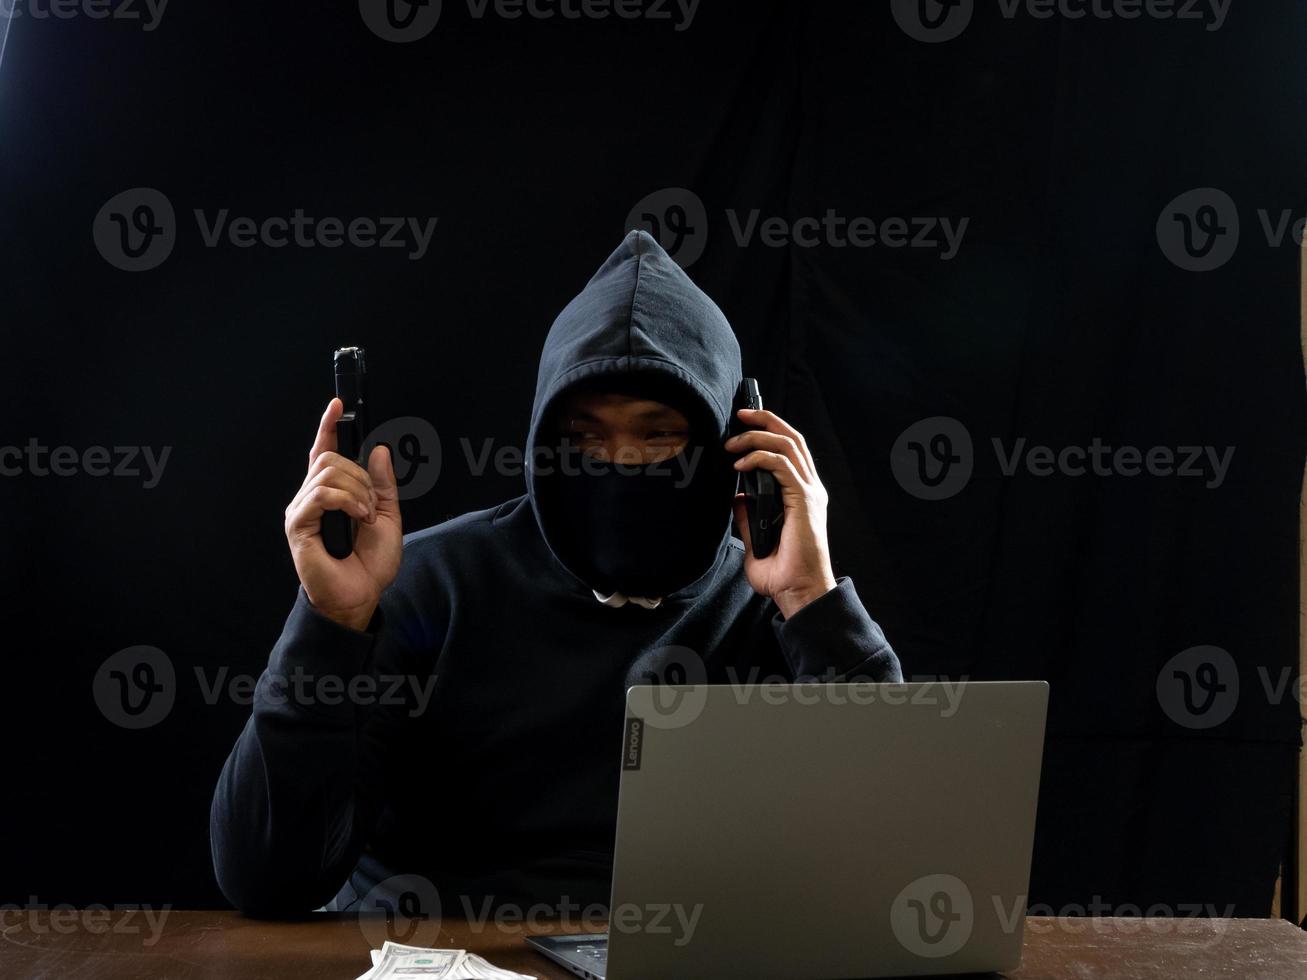 hacker espião homem uma pessoa com capuz preto sentado em uma mesa olhando computador laptop usado segurança de ataque de senha de login para circular dados digitais no sistema de rede da internet, fundo escuro noturno. foto